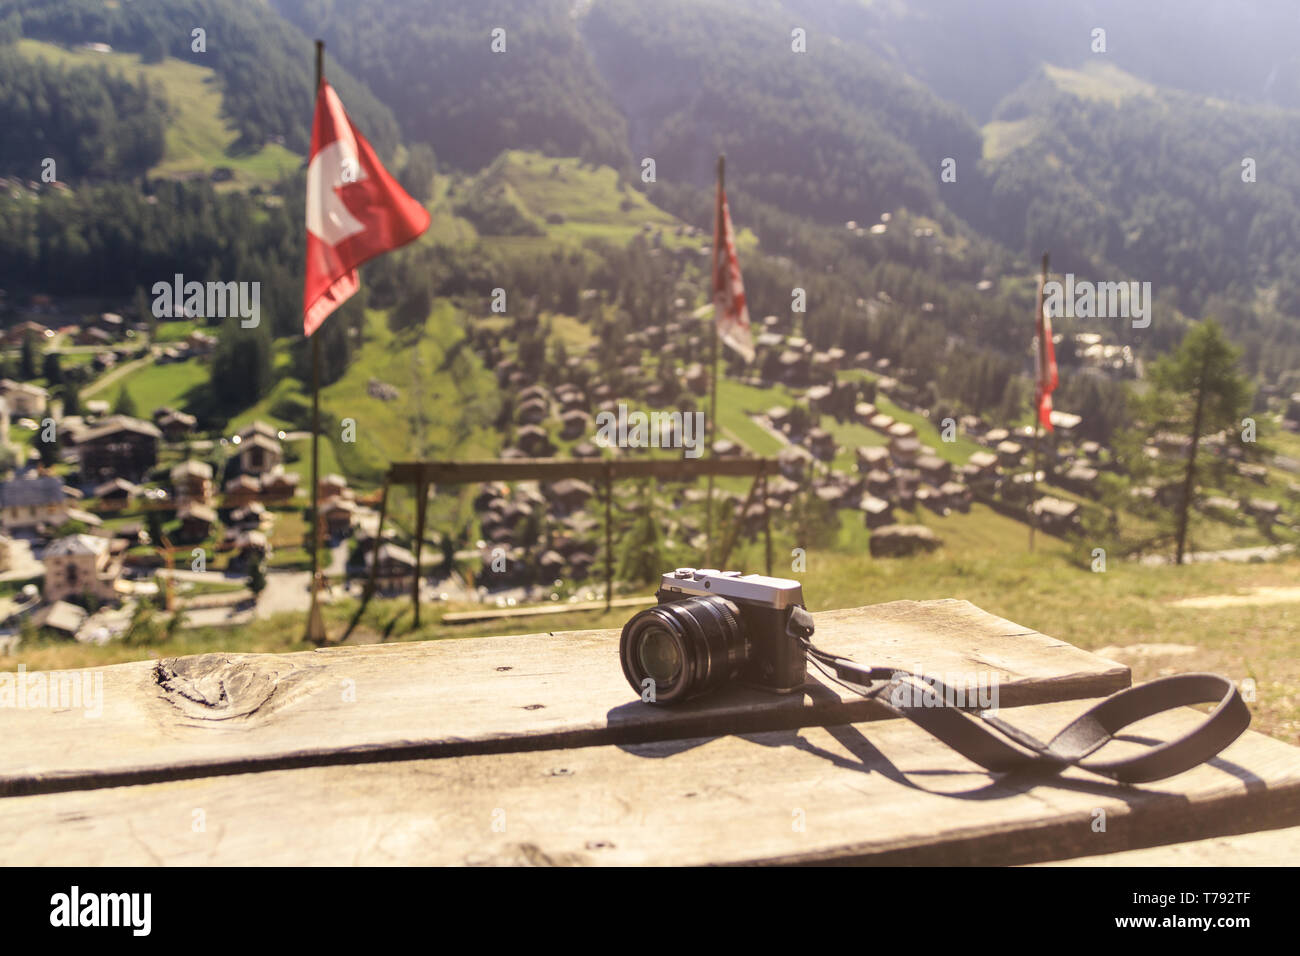 Un vintage cercando foto fotocamera su un tavolo di legno su un punto di vista sul villaggio alpino nelle Alpi Svizzere - estate concetto di viaggio Foto Stock